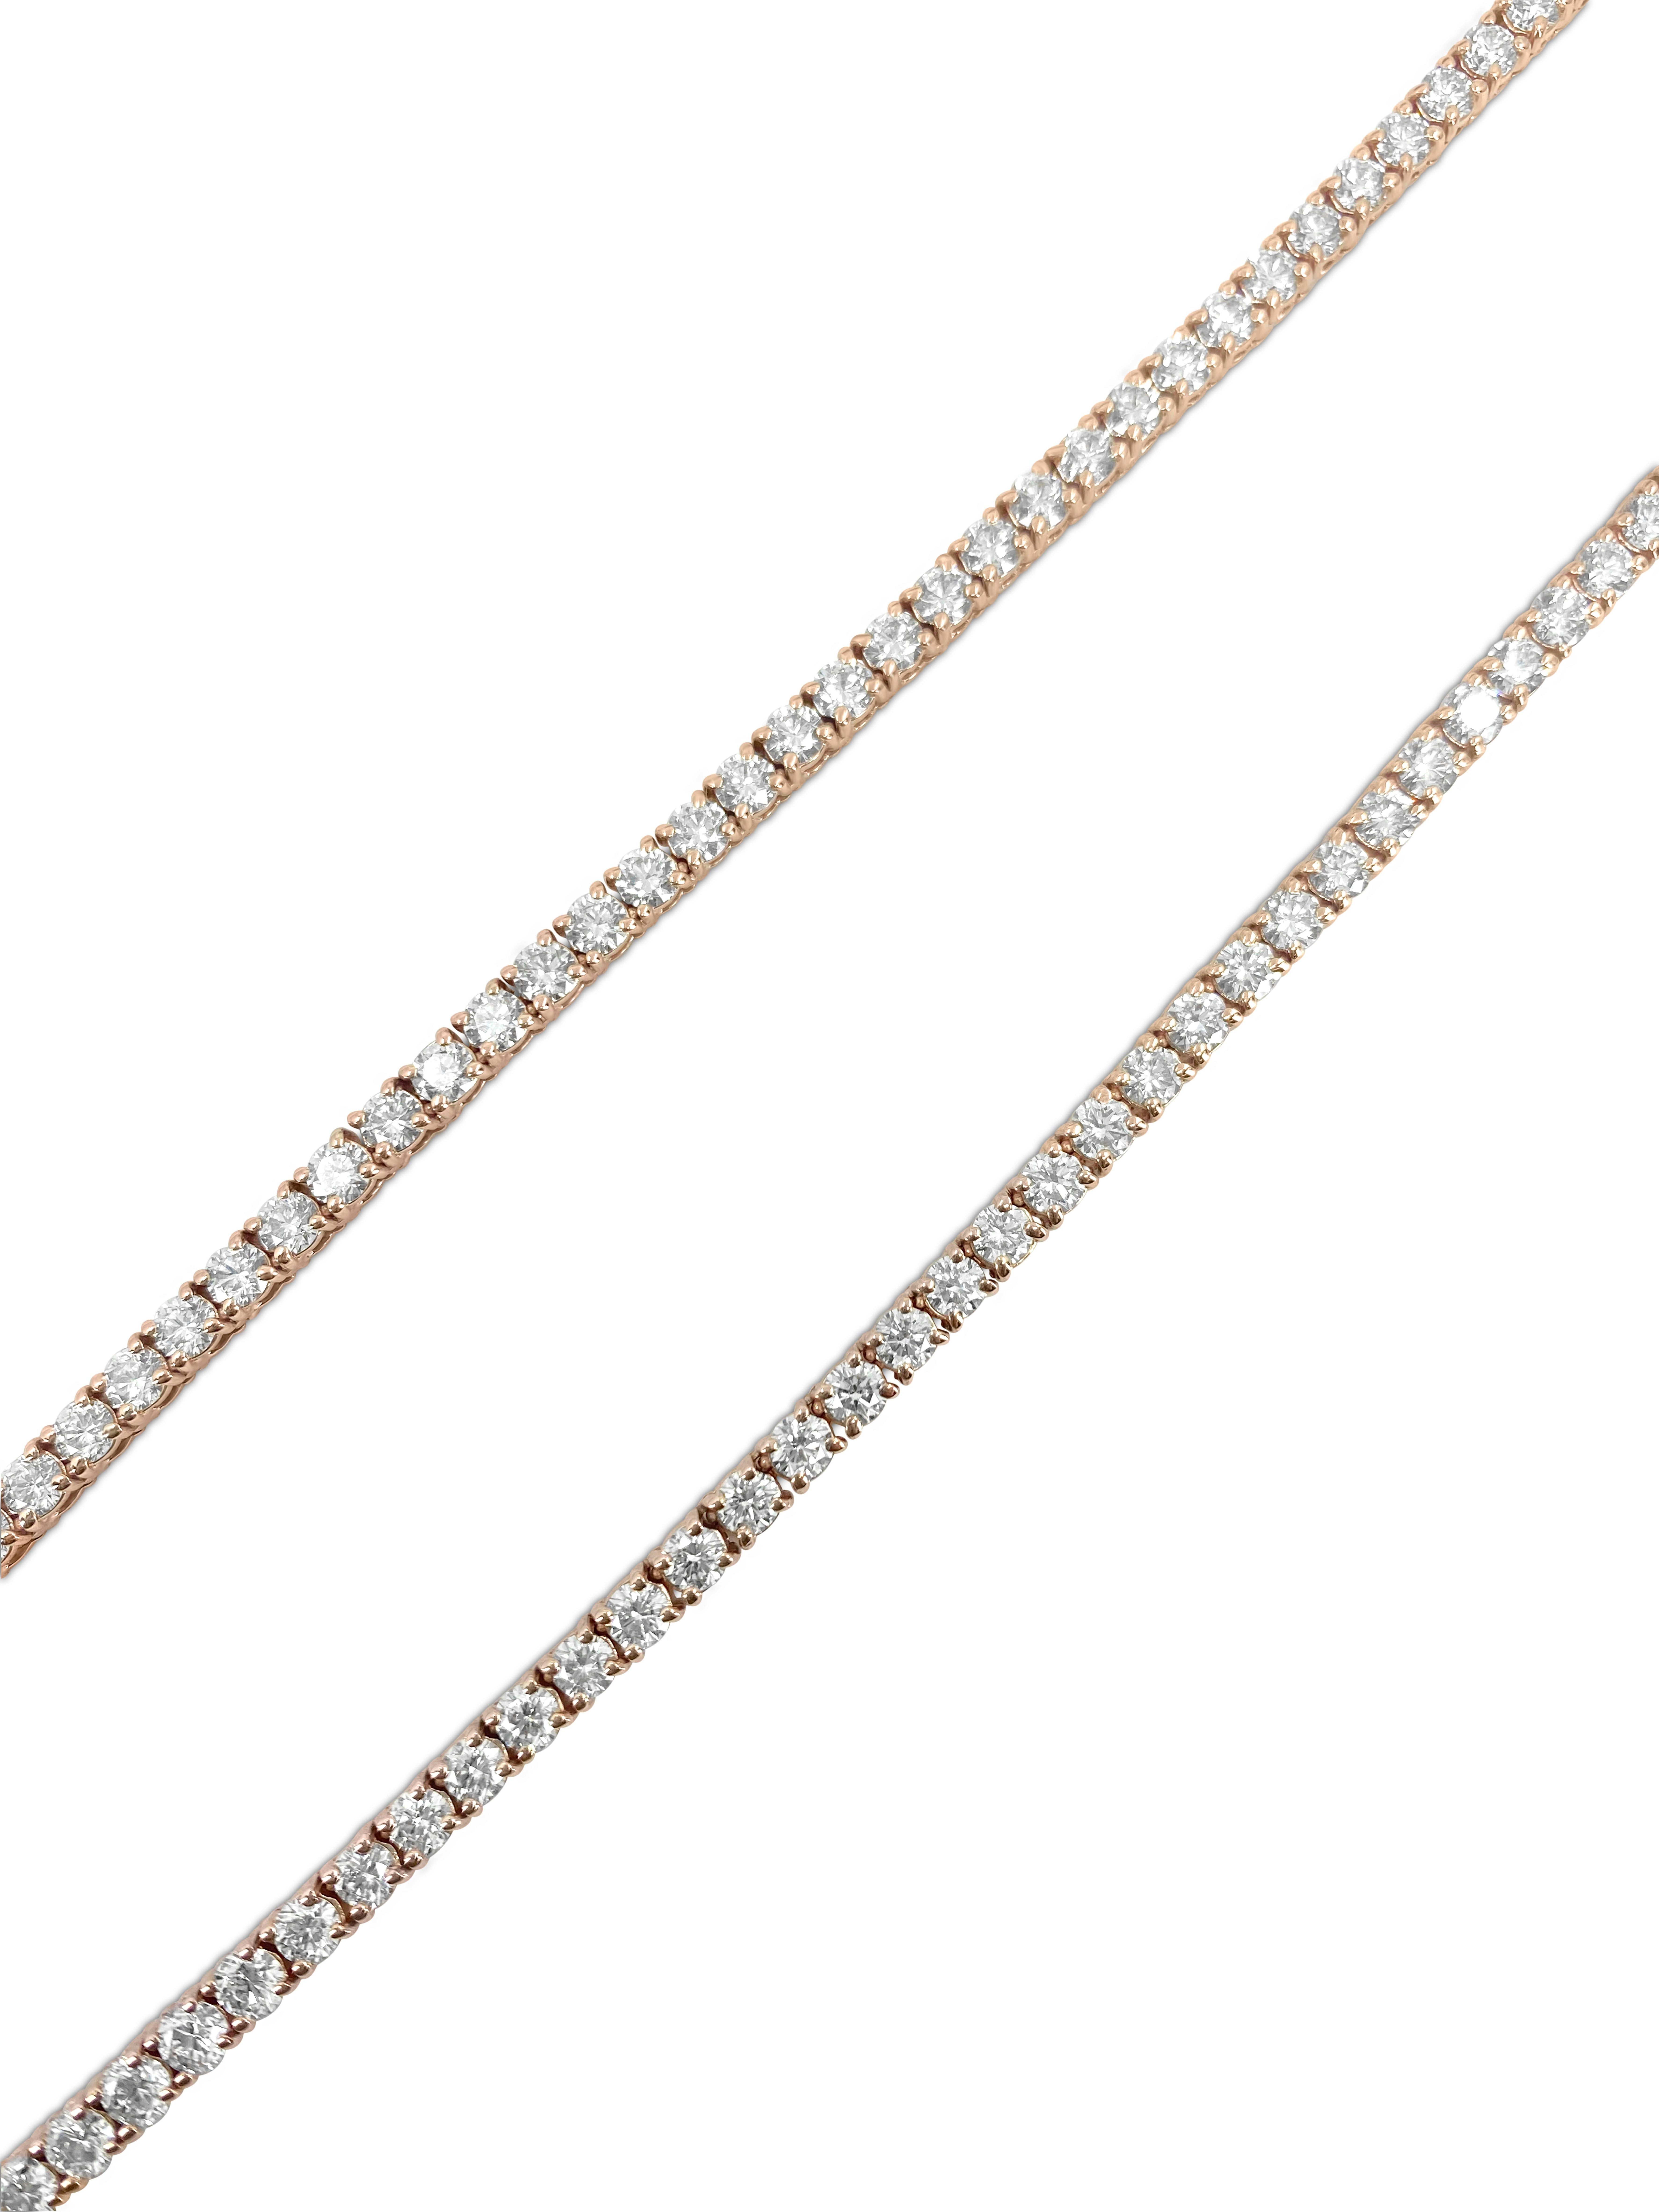 Erhöhen Sie Ihren Stil mit diesem exquisiten Schmuckstück aus 10 Karat Roségold, das mit 18 Karat schillernden Diamanten verziert ist. Enthüllen Sie die Brillanz natürlicher, auf der Erde abgebauter Diamanten mit VVS-VS-Reinheit und H-I-Farbe in